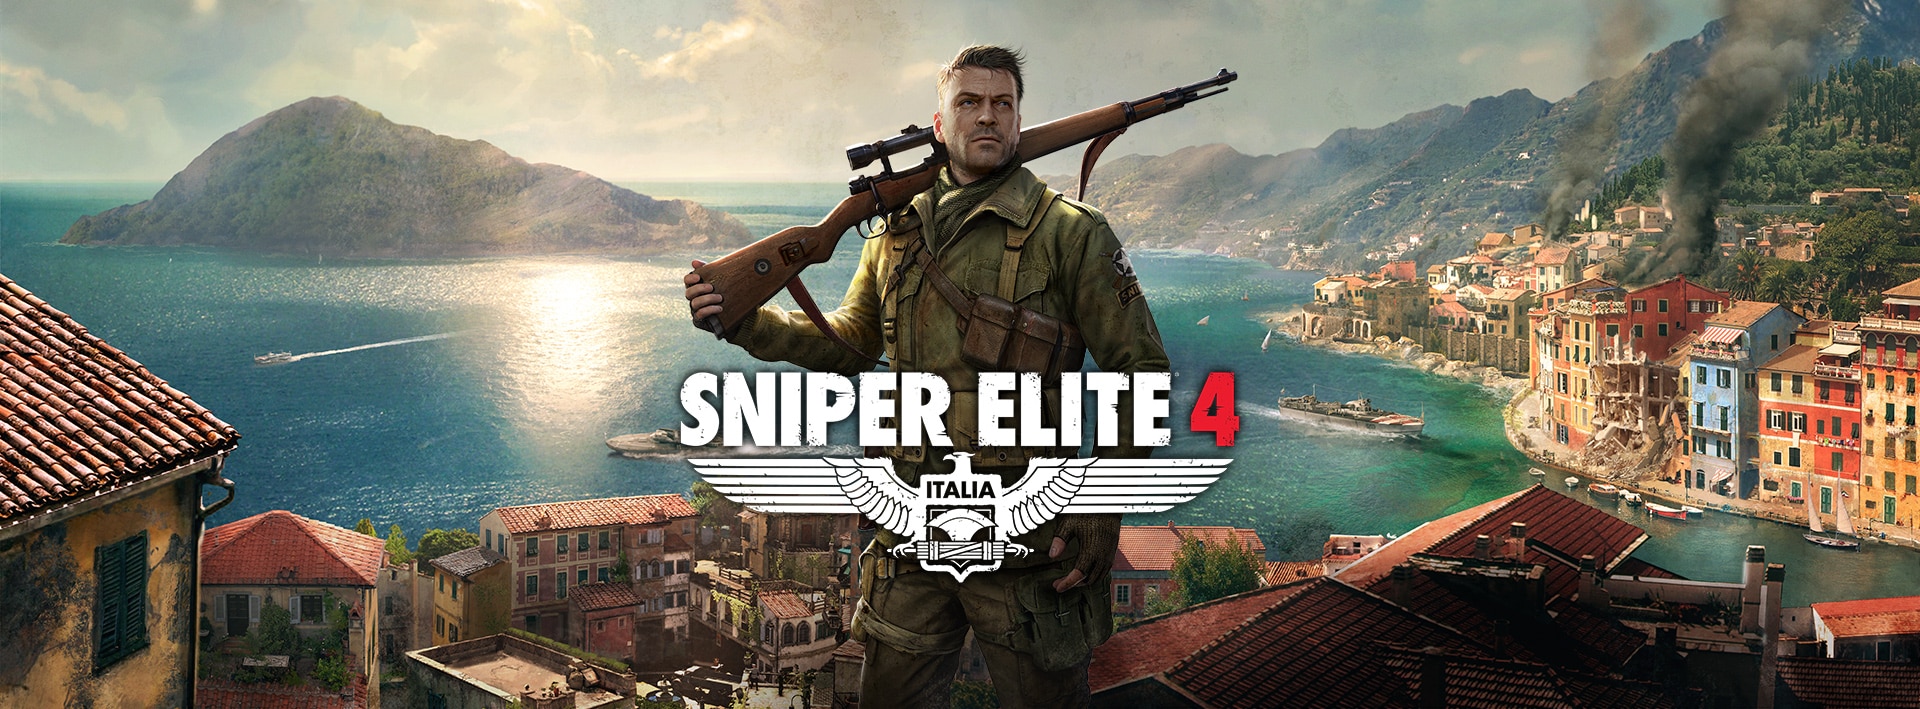 Sniper Elite 4 Deluxe Edition /STEAM АККАУНТ/ГАРАНТИЯ